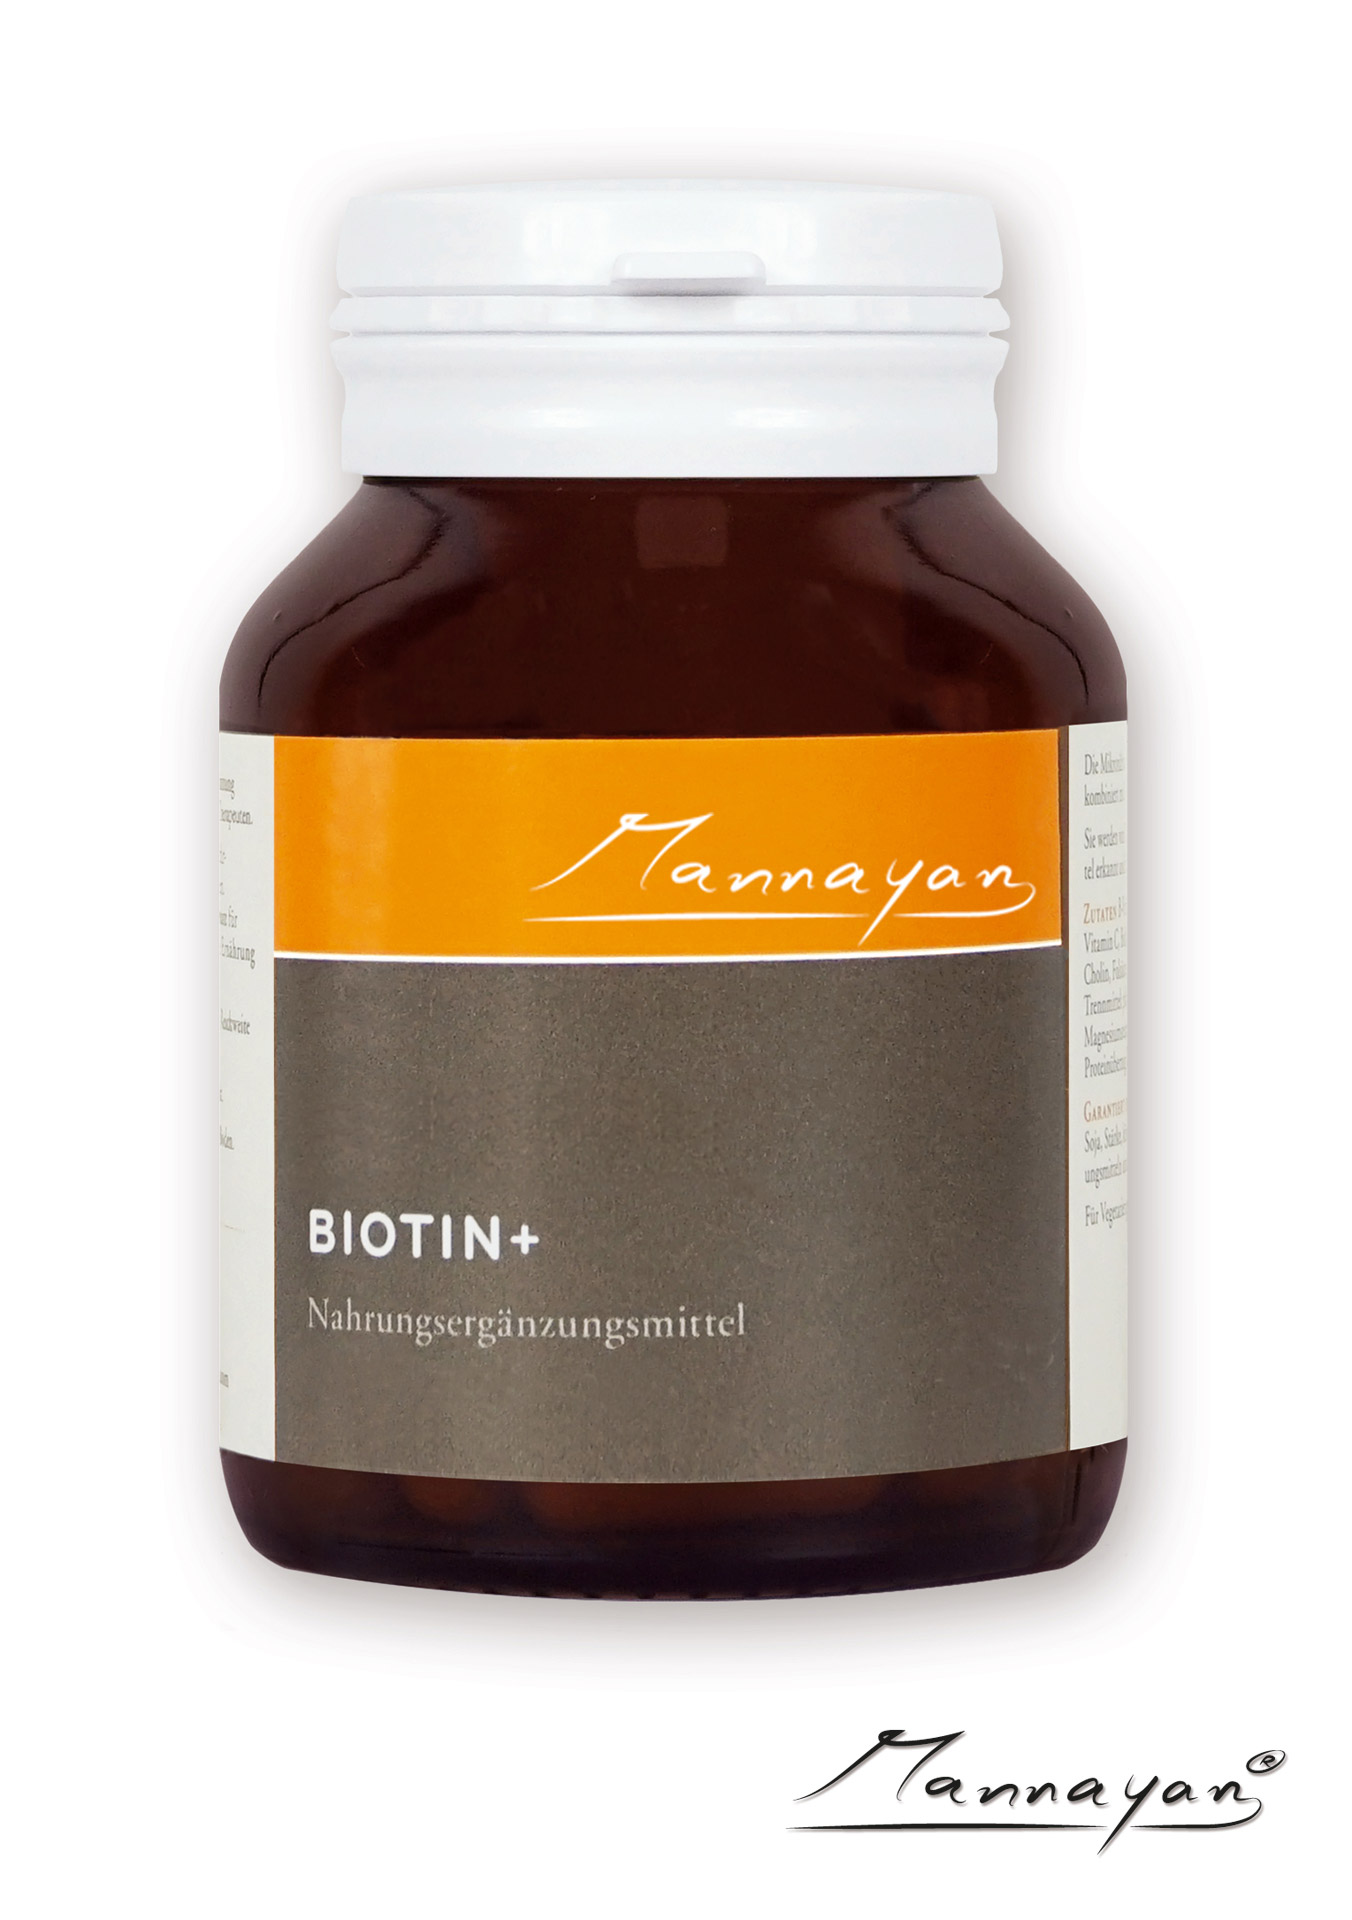 Mannayan BIOTIN + (60 Tabletten)